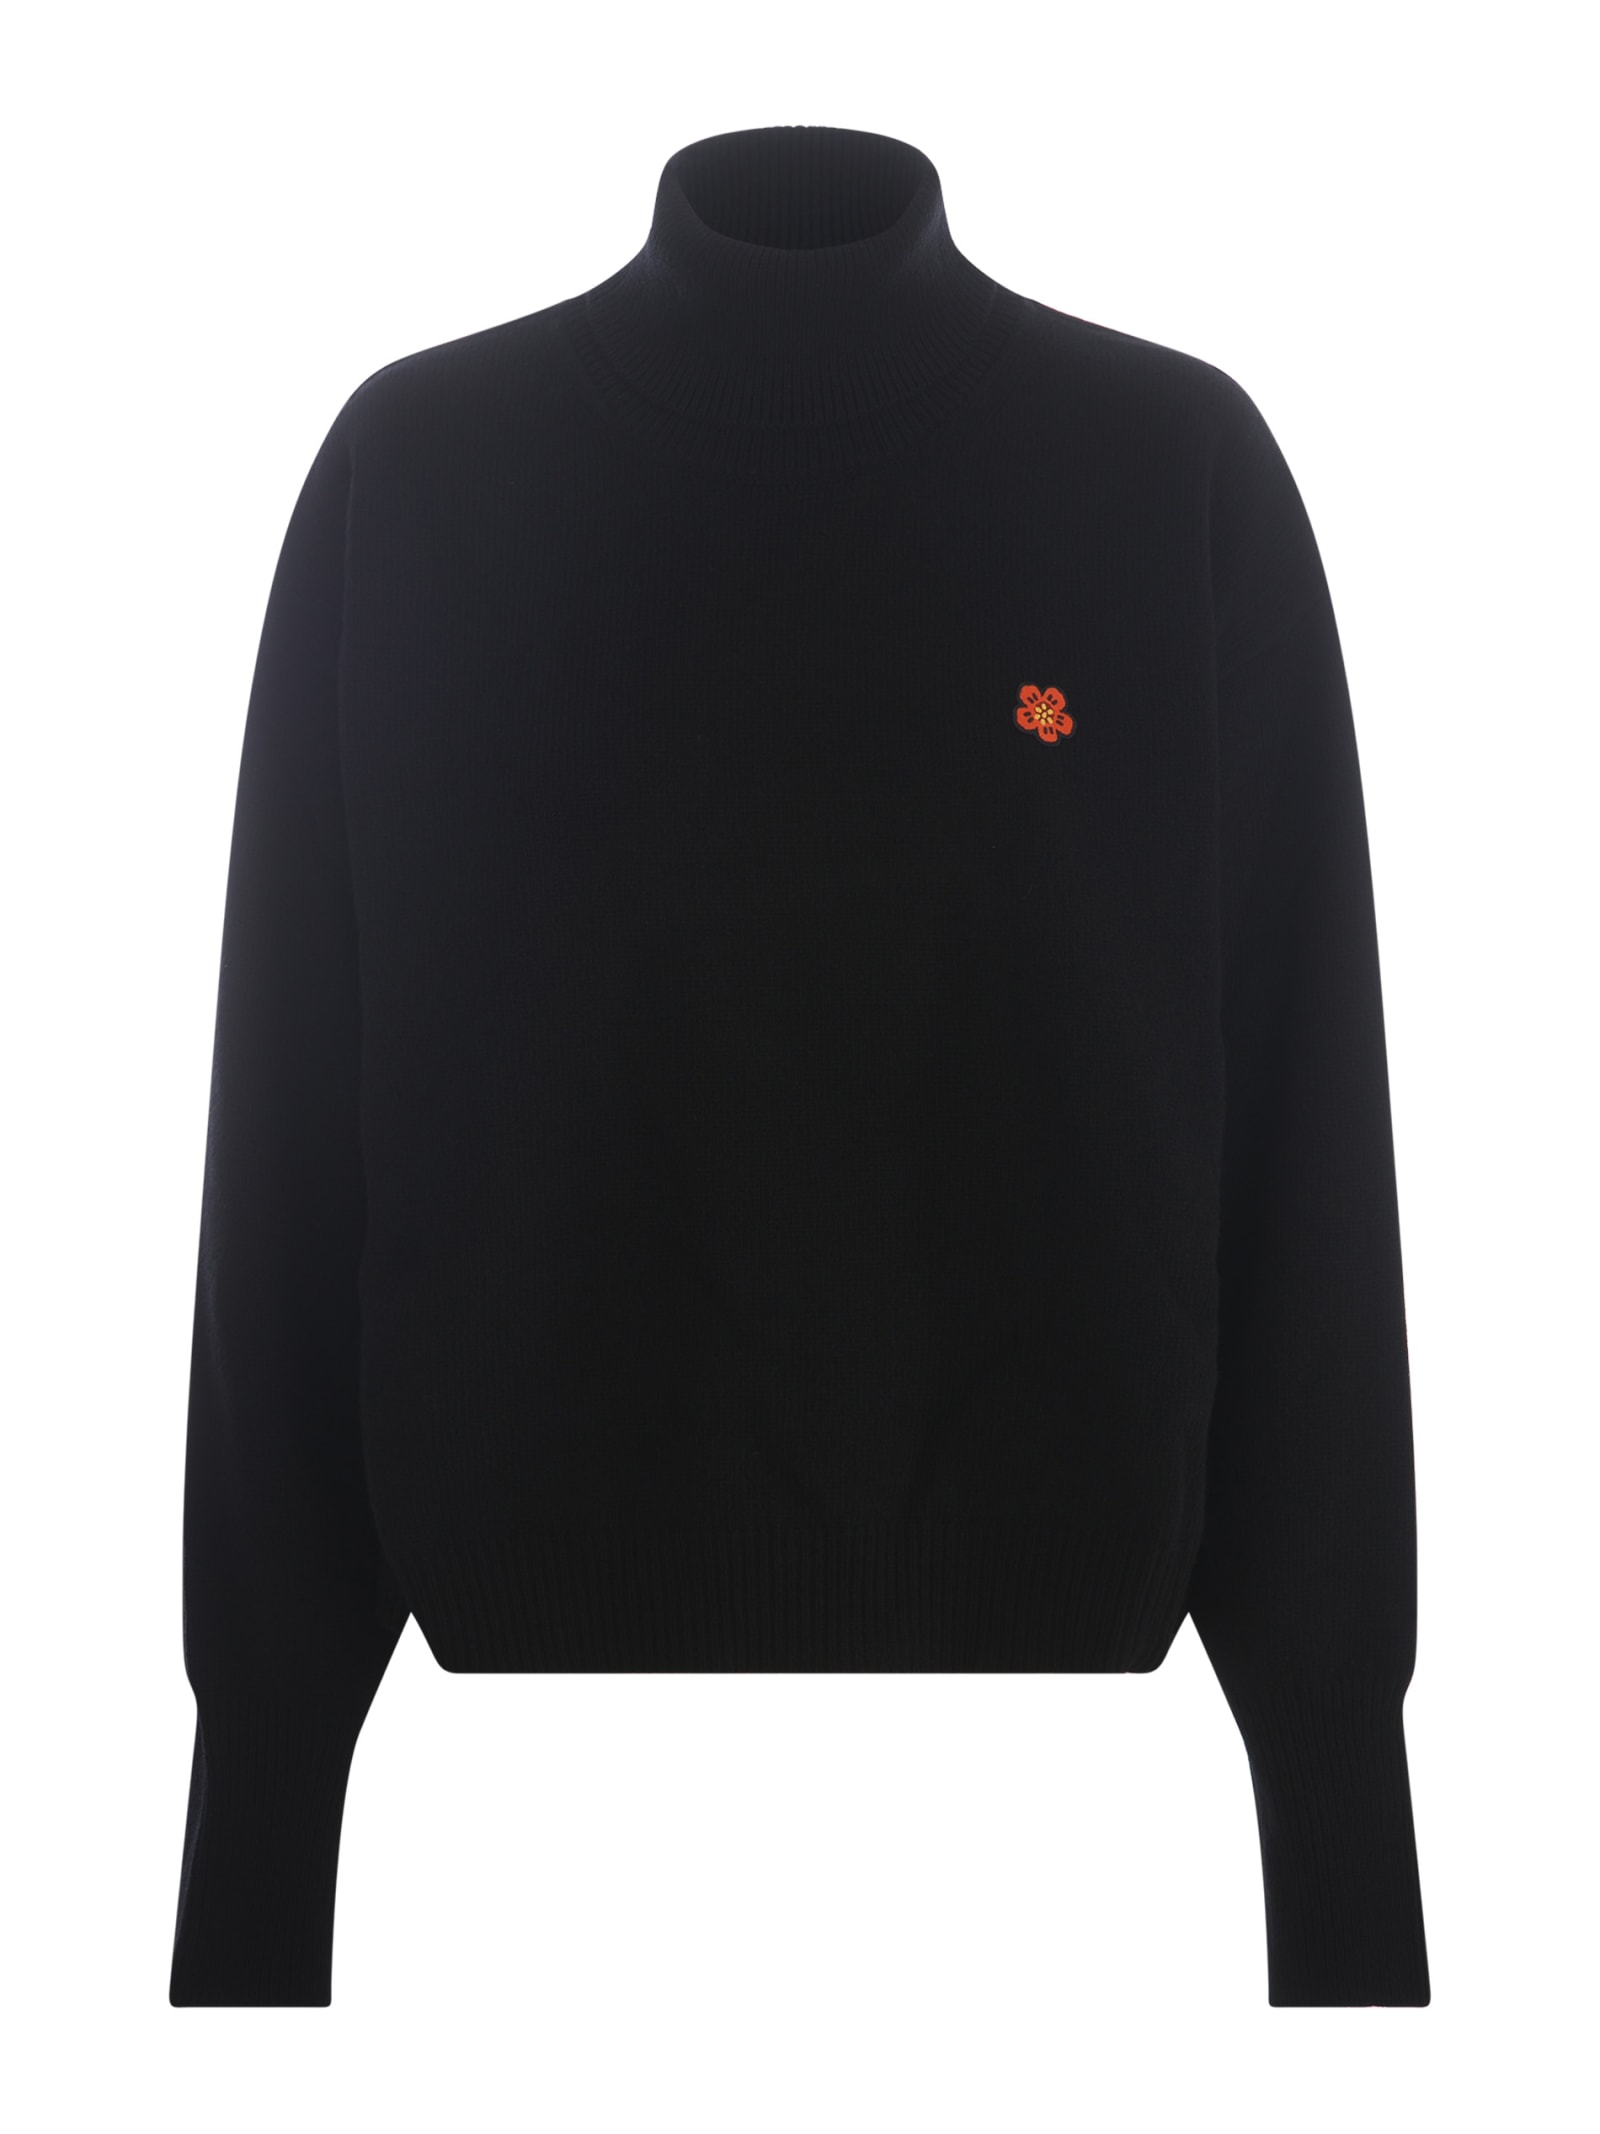 Kenzo Sweater  Flower In Wool In Black